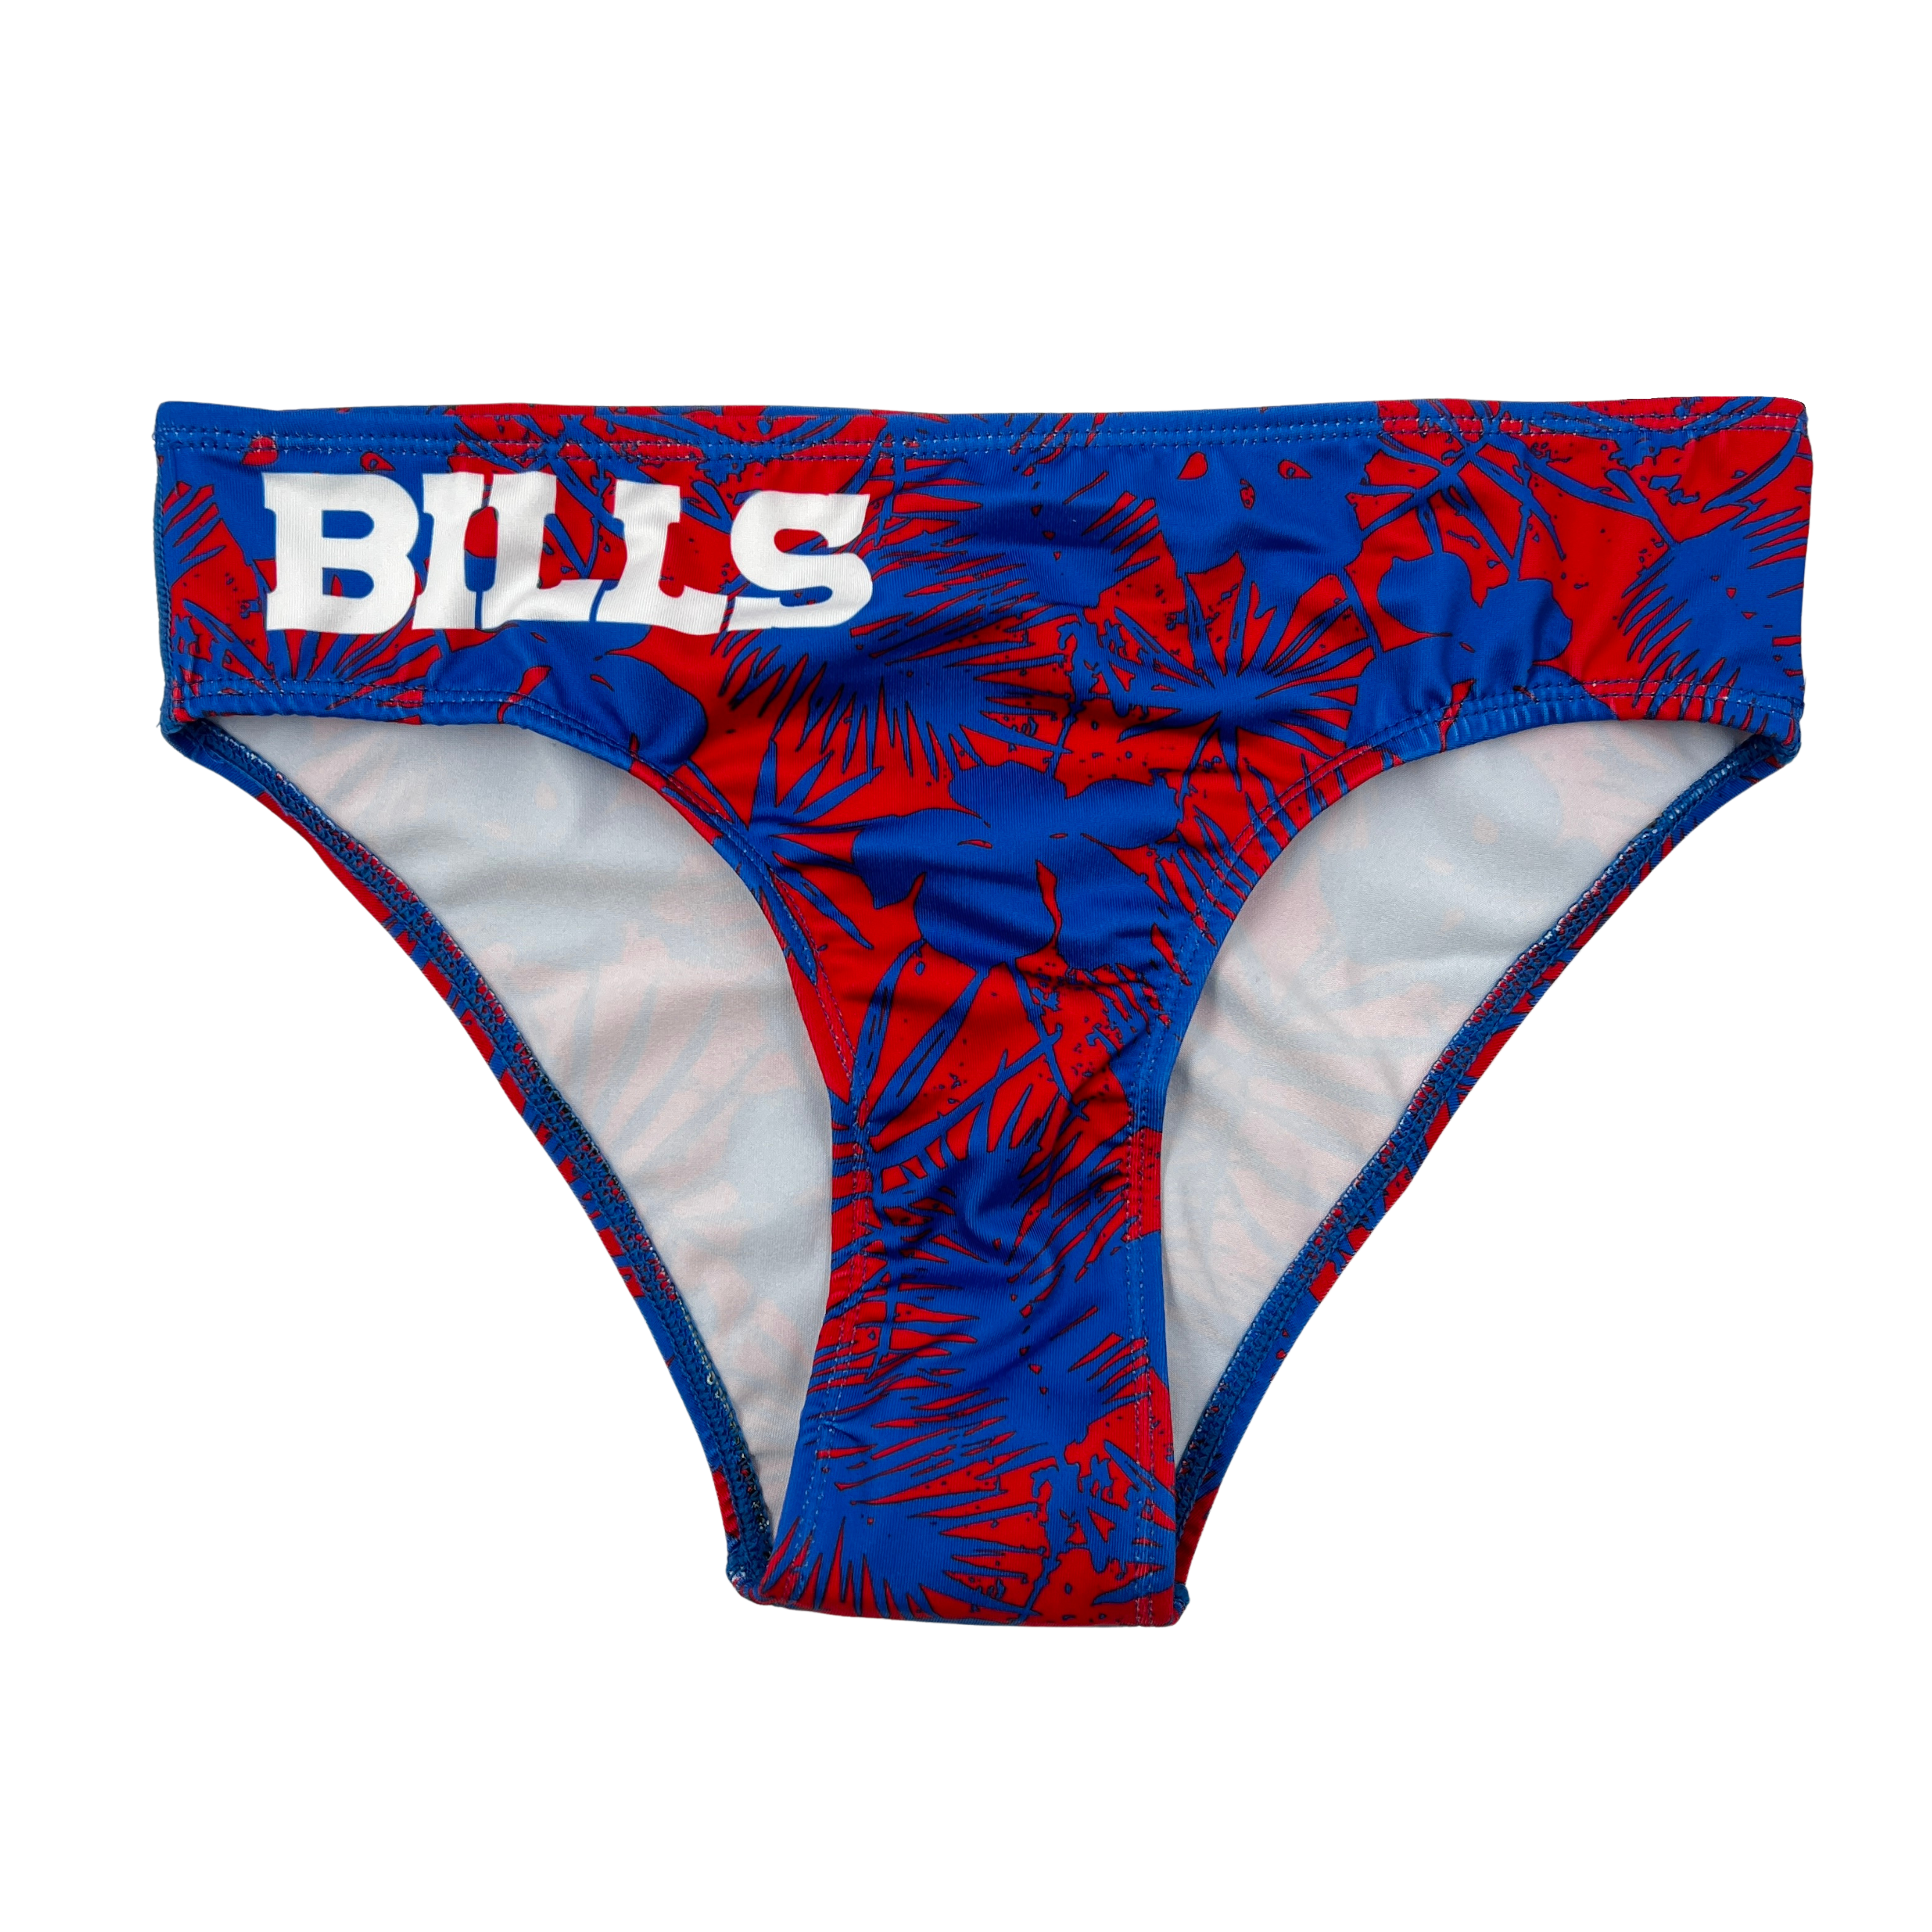 buffalo bills bikini